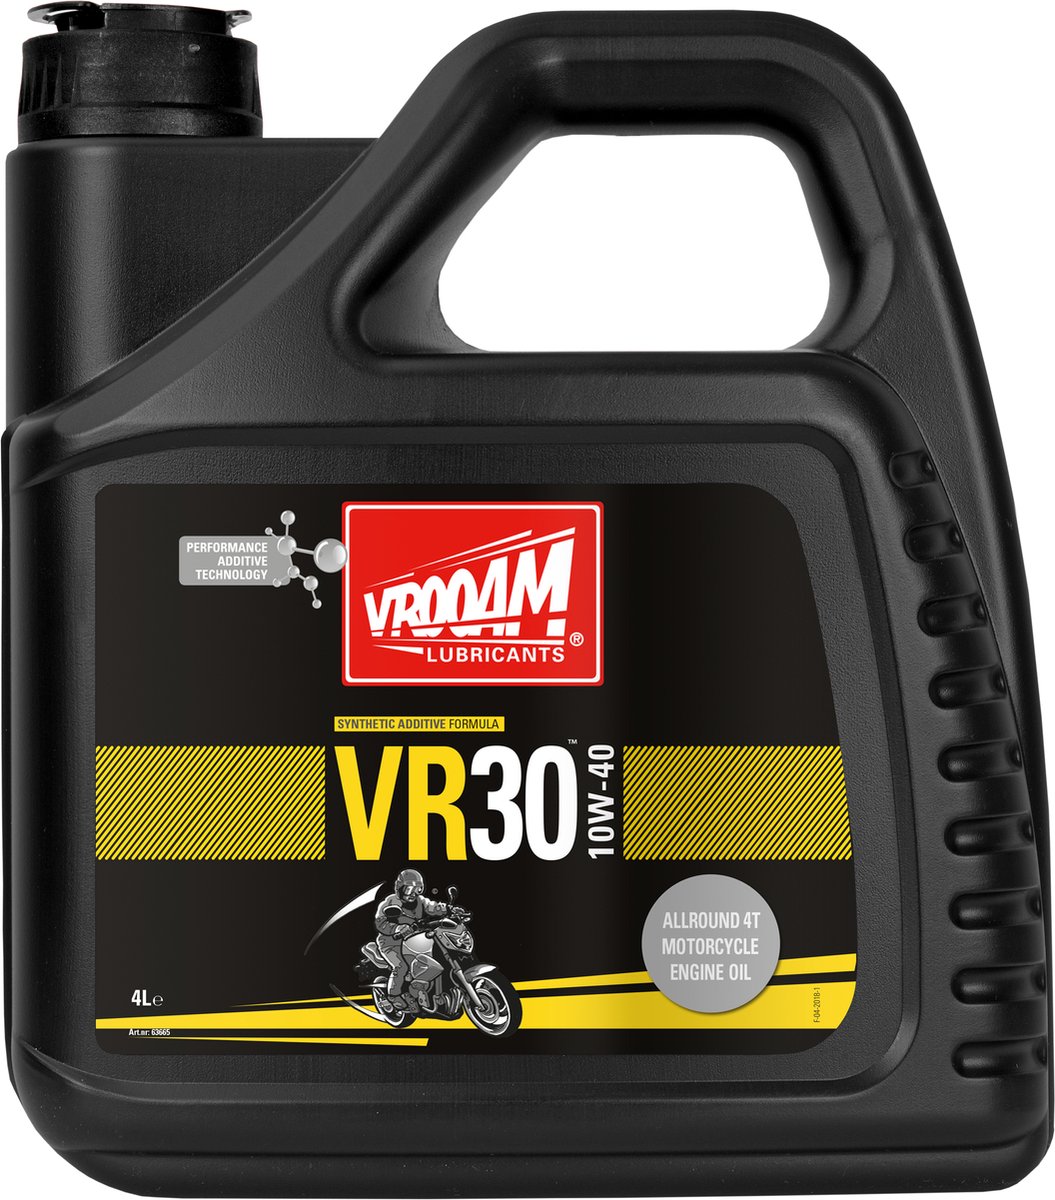 VROOAM VR30 ENGINE OIL 10W-40 4 L